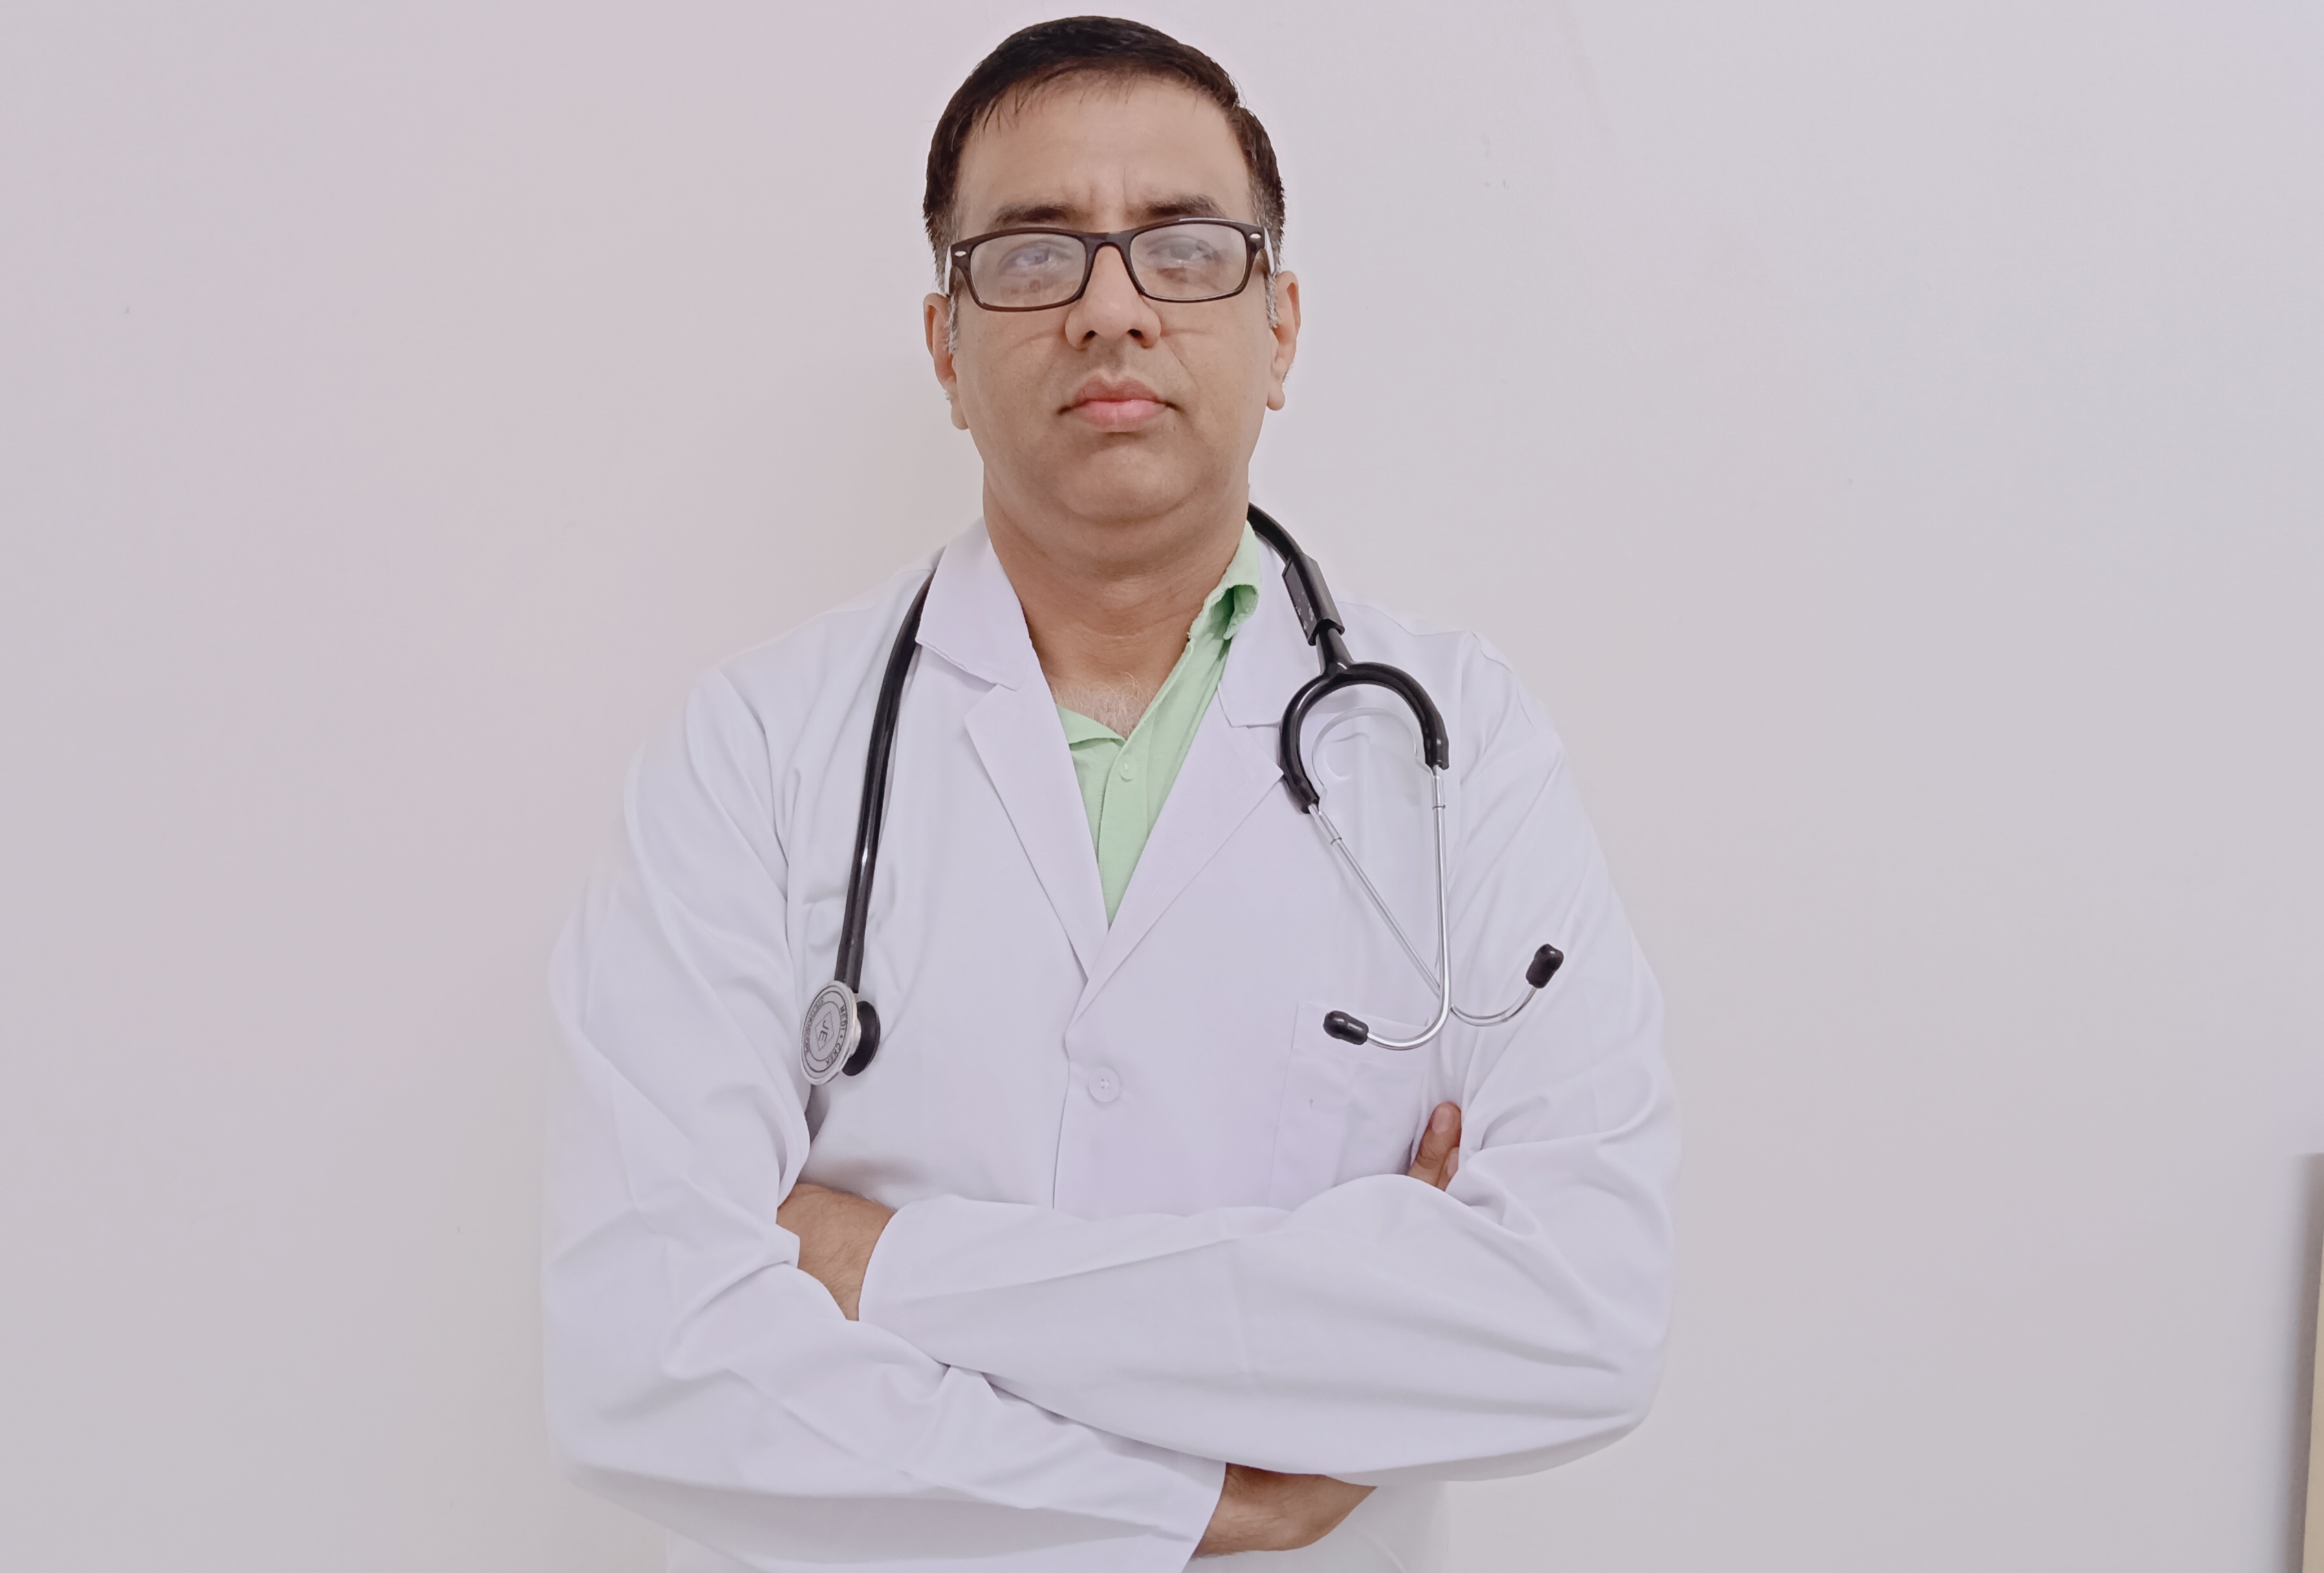 Dr (Major) Prashant Yadav